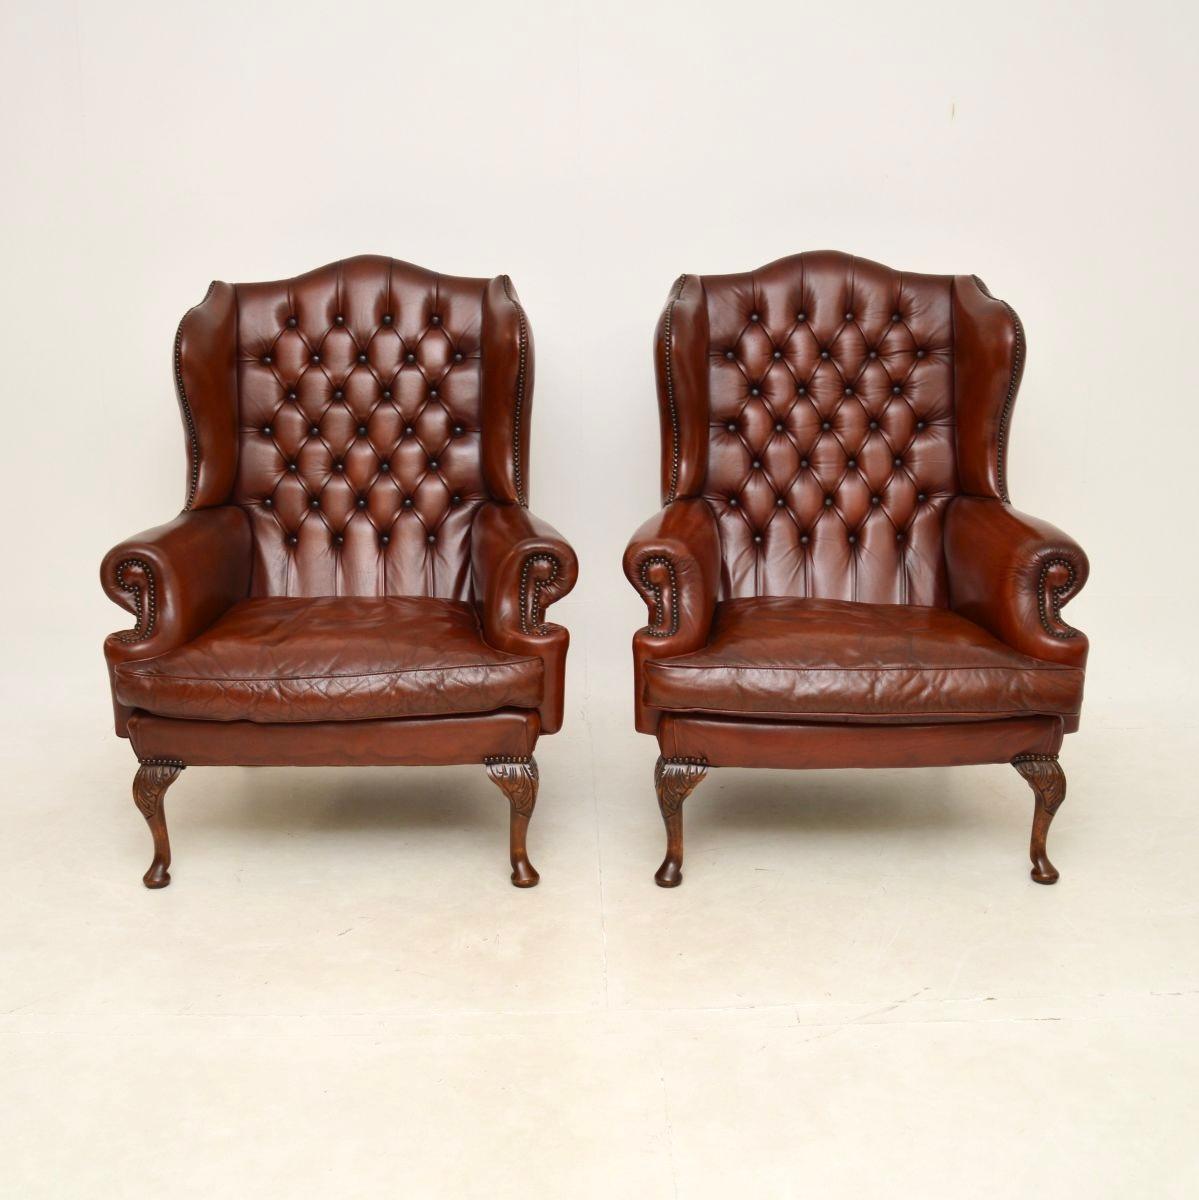 Une fantastique paire de fauteuils anciens en cuir à dossier en forme d'aile. Fabriqués en Angleterre, ils datent des années 1930.

La qualité est superbe et il est extrêmement confortable de s'y détendre, car ils offrent un bon soutien et sont